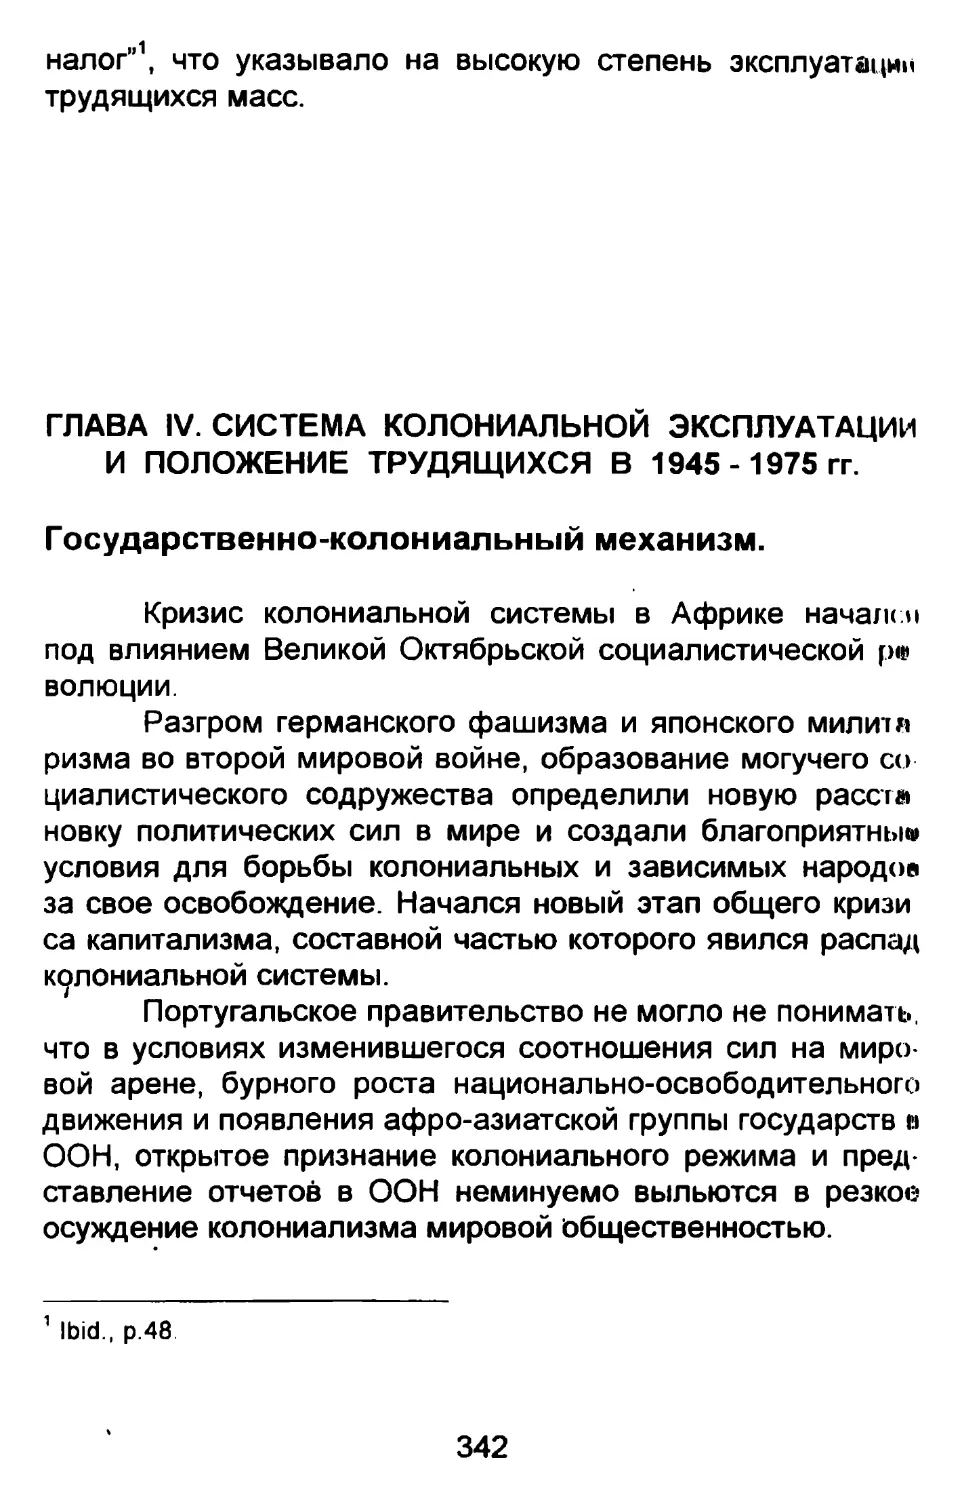 ГЛАВА IV. СИСТЕМА КОЛОНИАЛЬНОЙ ЭКСПЛУАТАЦИИ И ПОЛОЖЕНИЕ ТРУДЯЩИХСЯ В 1945-1975 гг